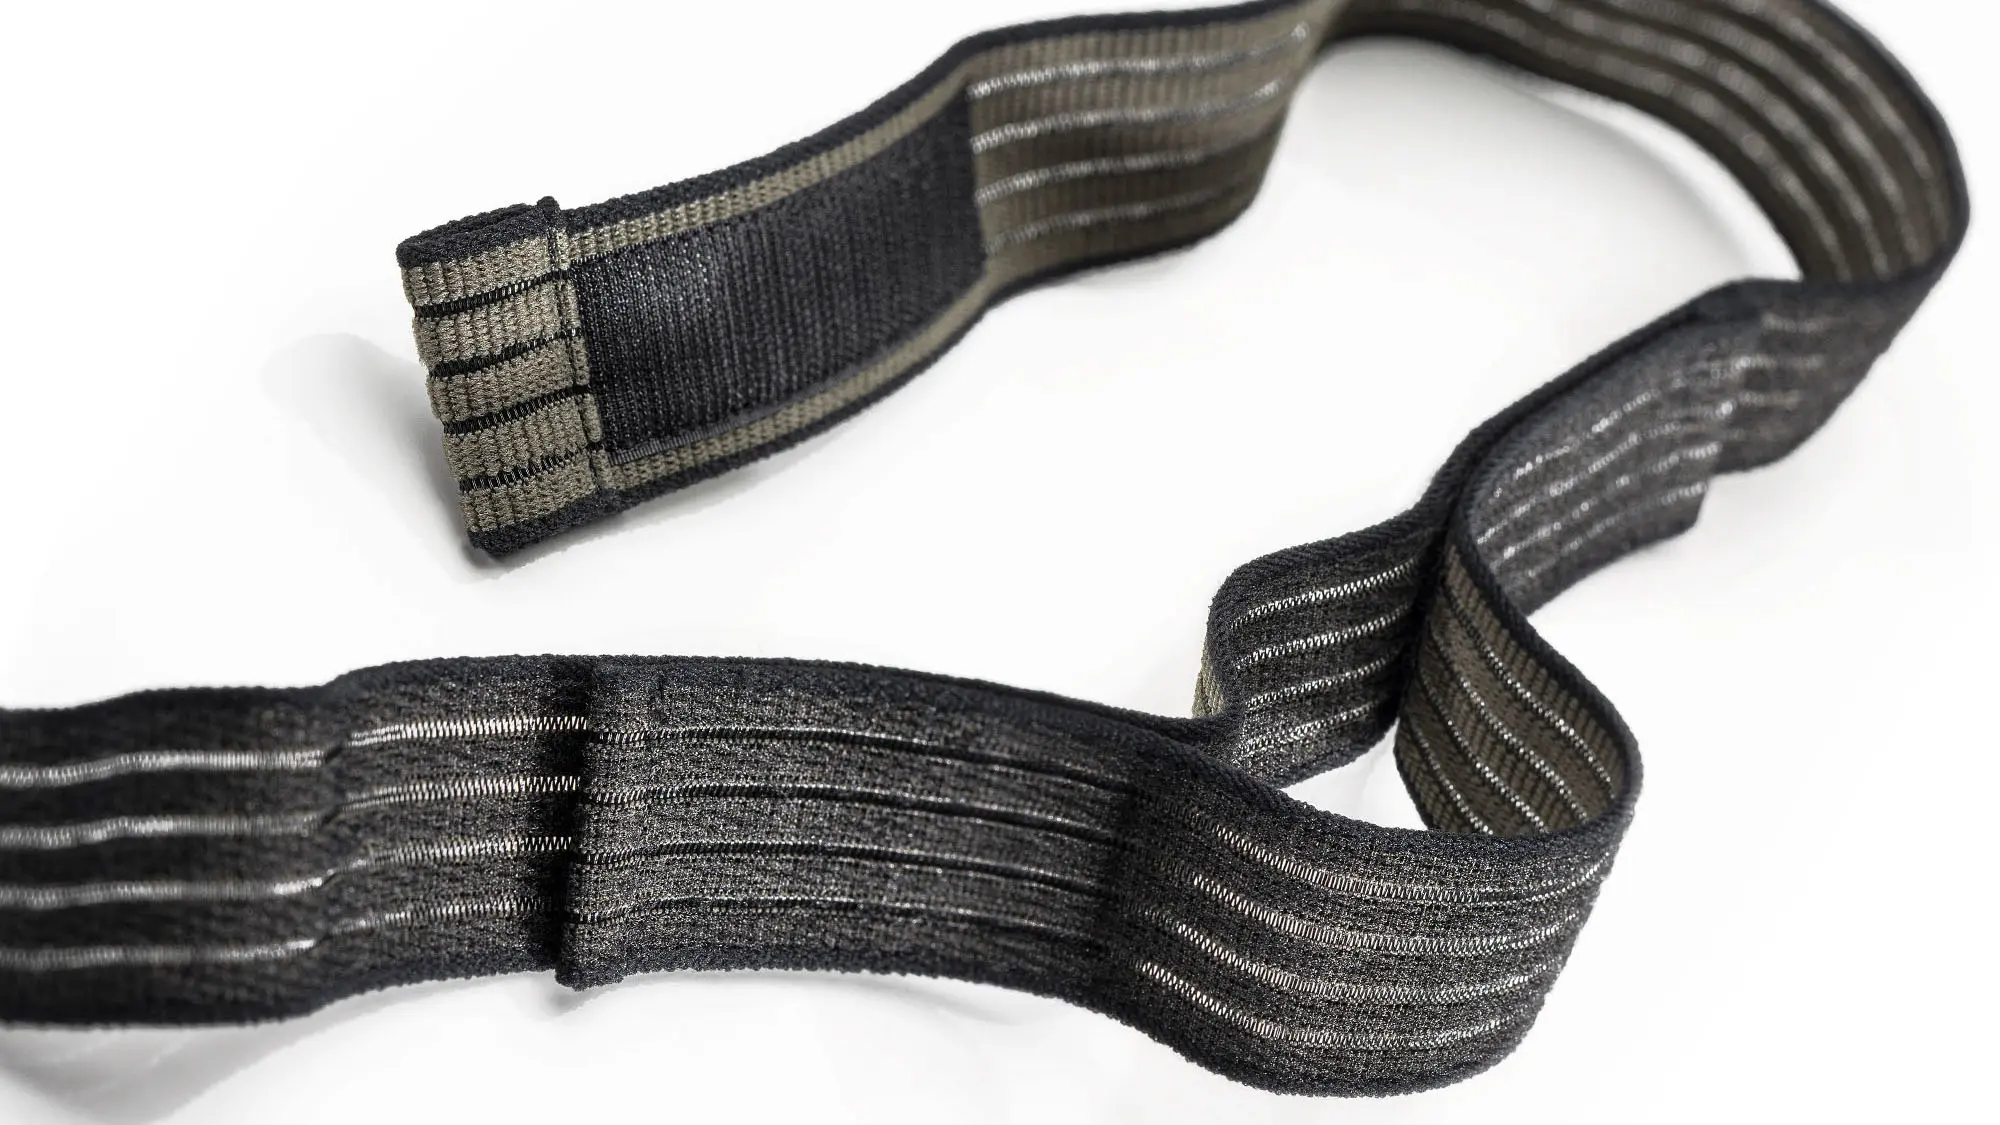 Klettfähiger Elastikgurt: Produktfoto eines schwarz und olivfarbenen und elastischen Klettband auf weißem Hintergrund